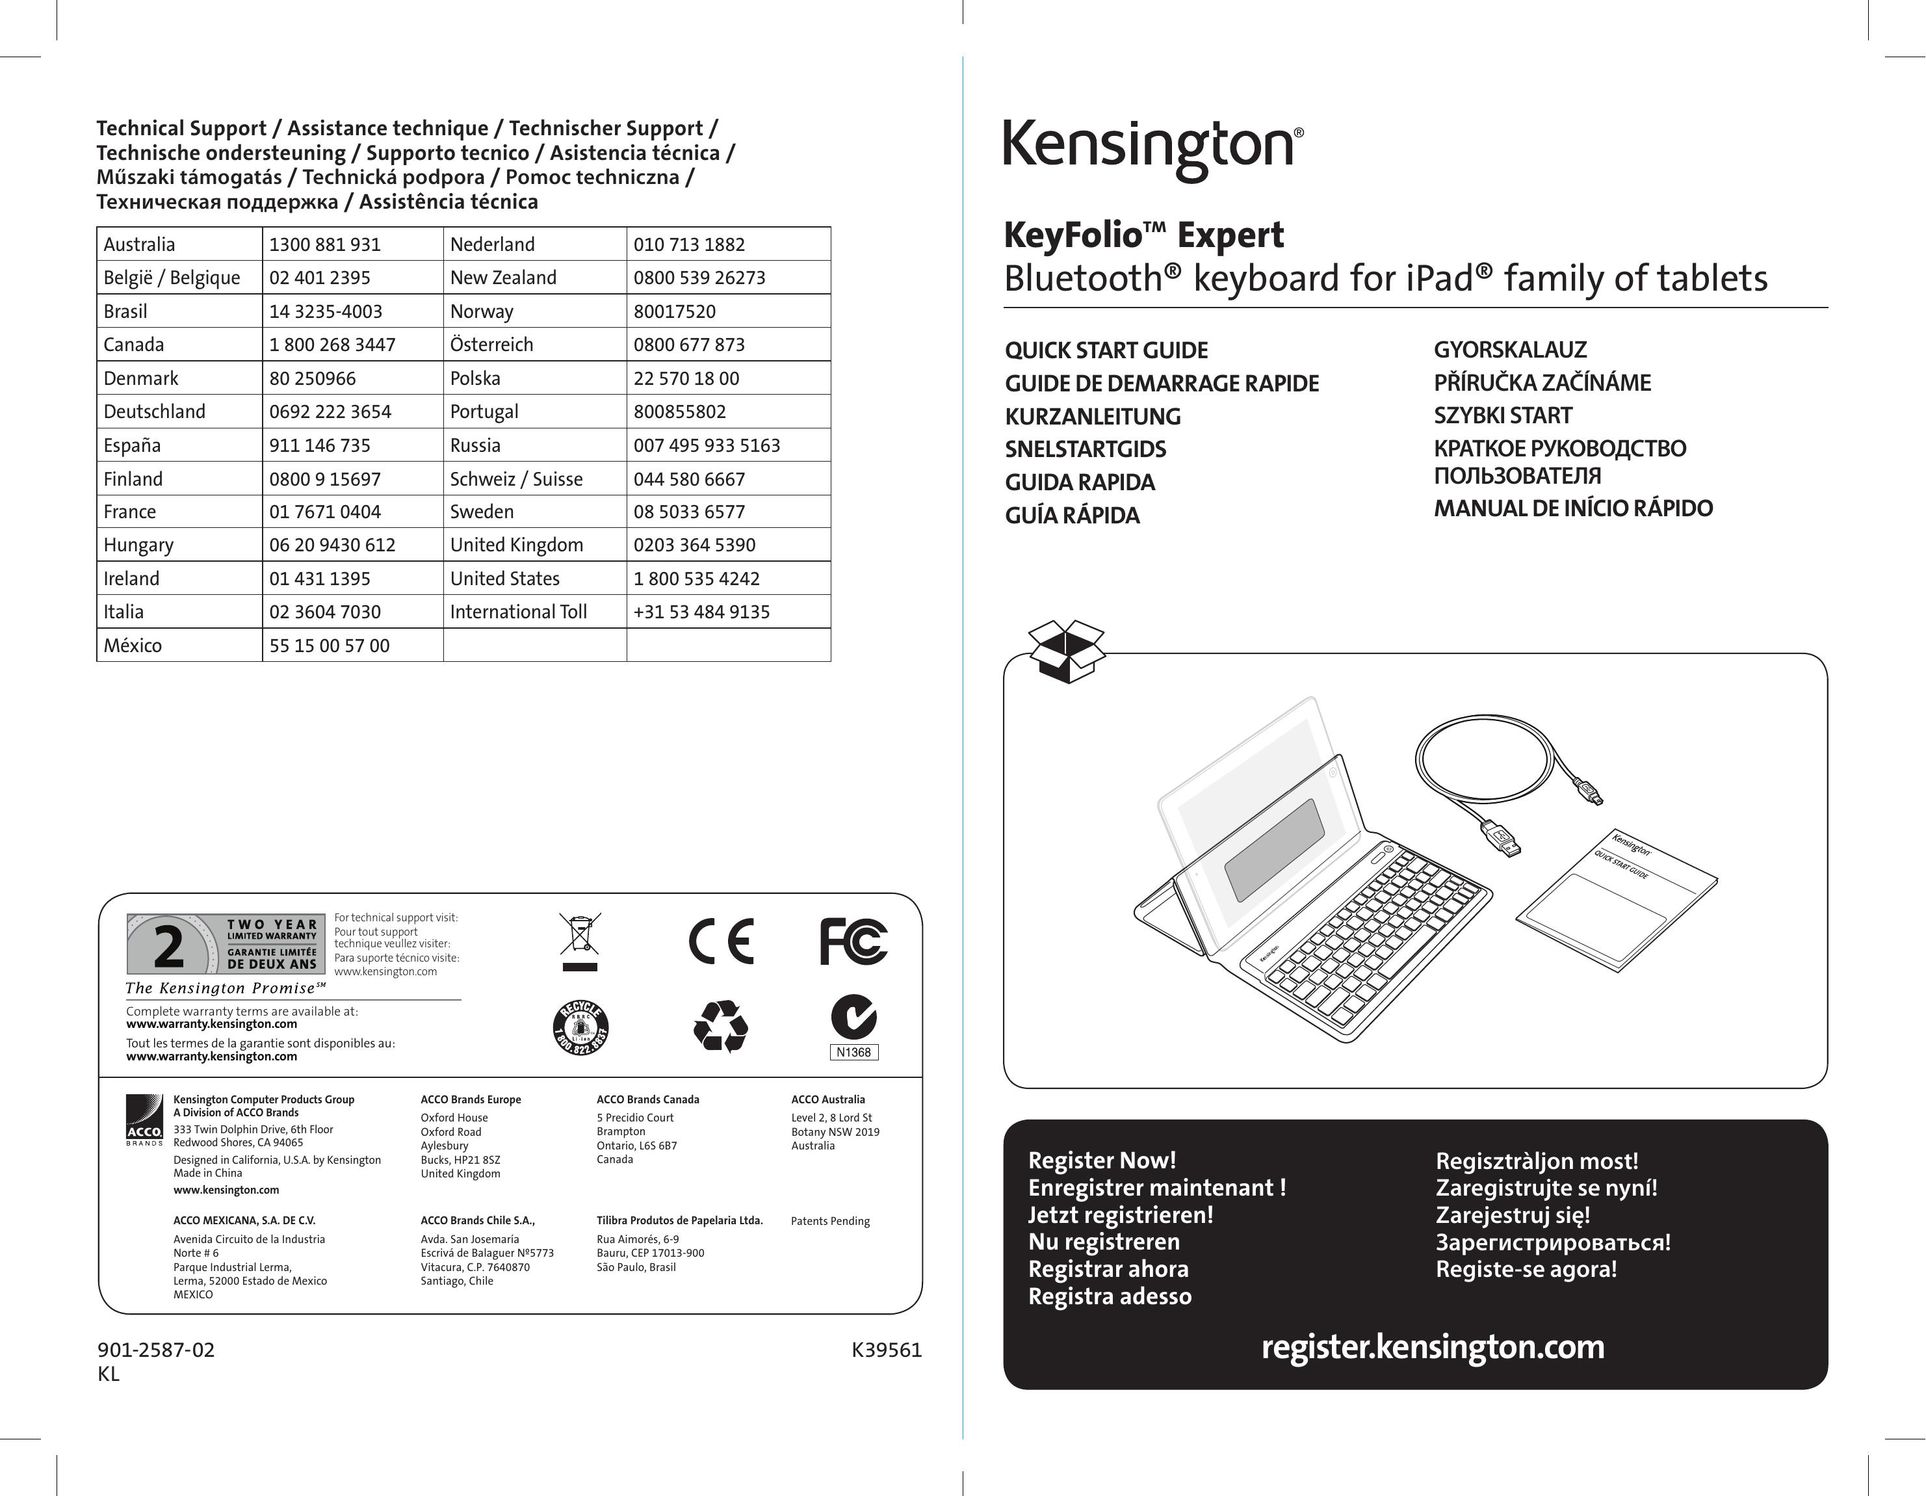 Kensington K39561 Video Game Keyboard User Manual